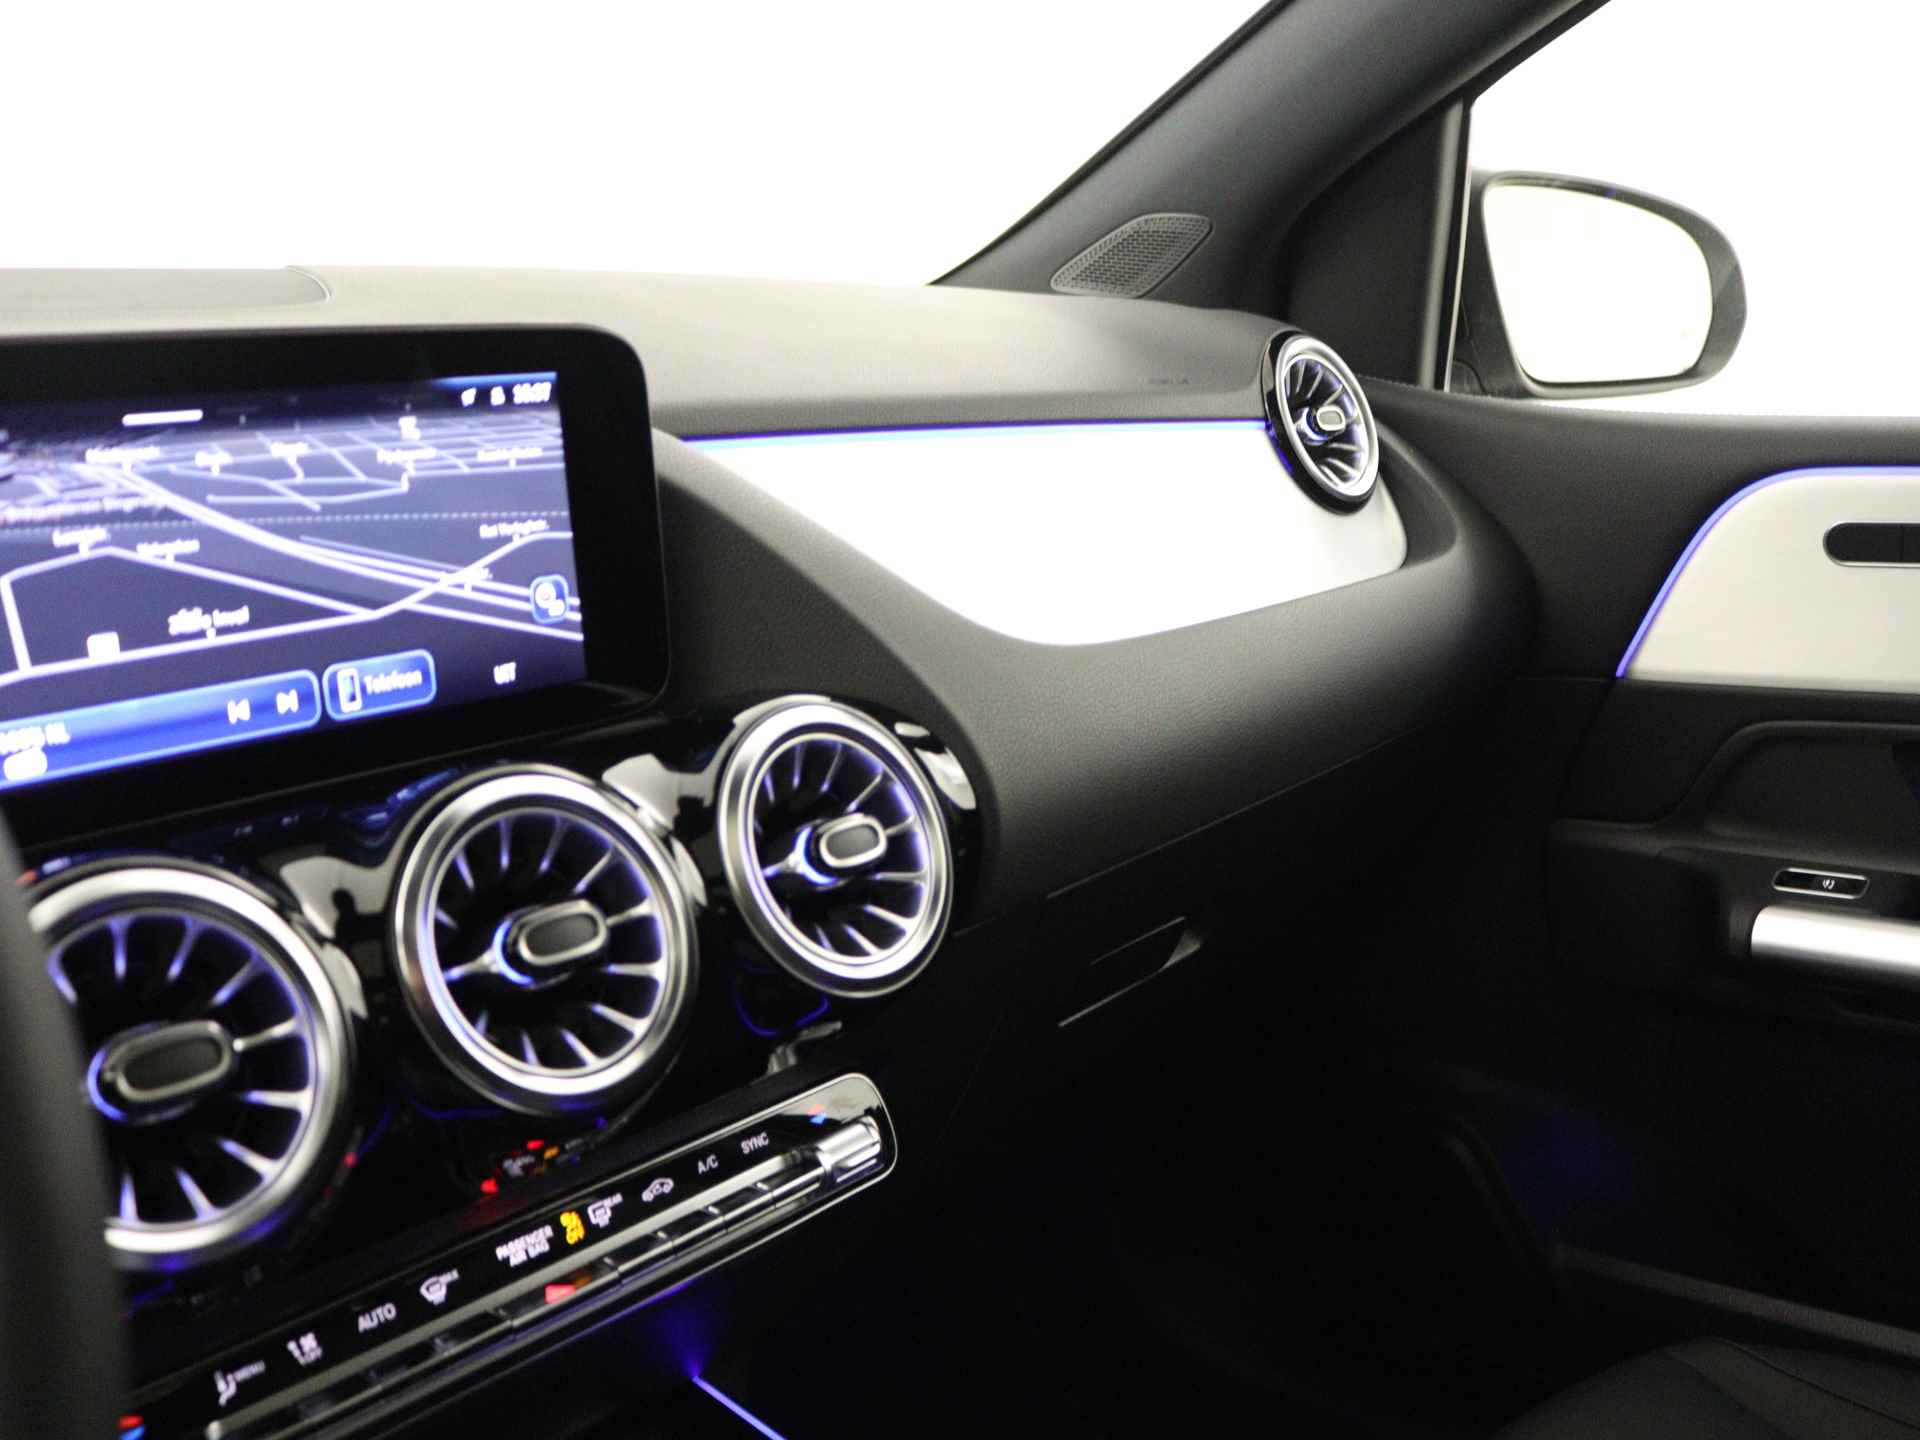 Mercedes-Benz B-Klasse 180 Luxury Line | Rijassistentiepakket | Panoramaschuifdak | Sfeerverlichting | Apple CarPlay | Android Auto | Inclusief 24 maanden Mercedes-Benz Certified garantie voor Europa. - 7/38